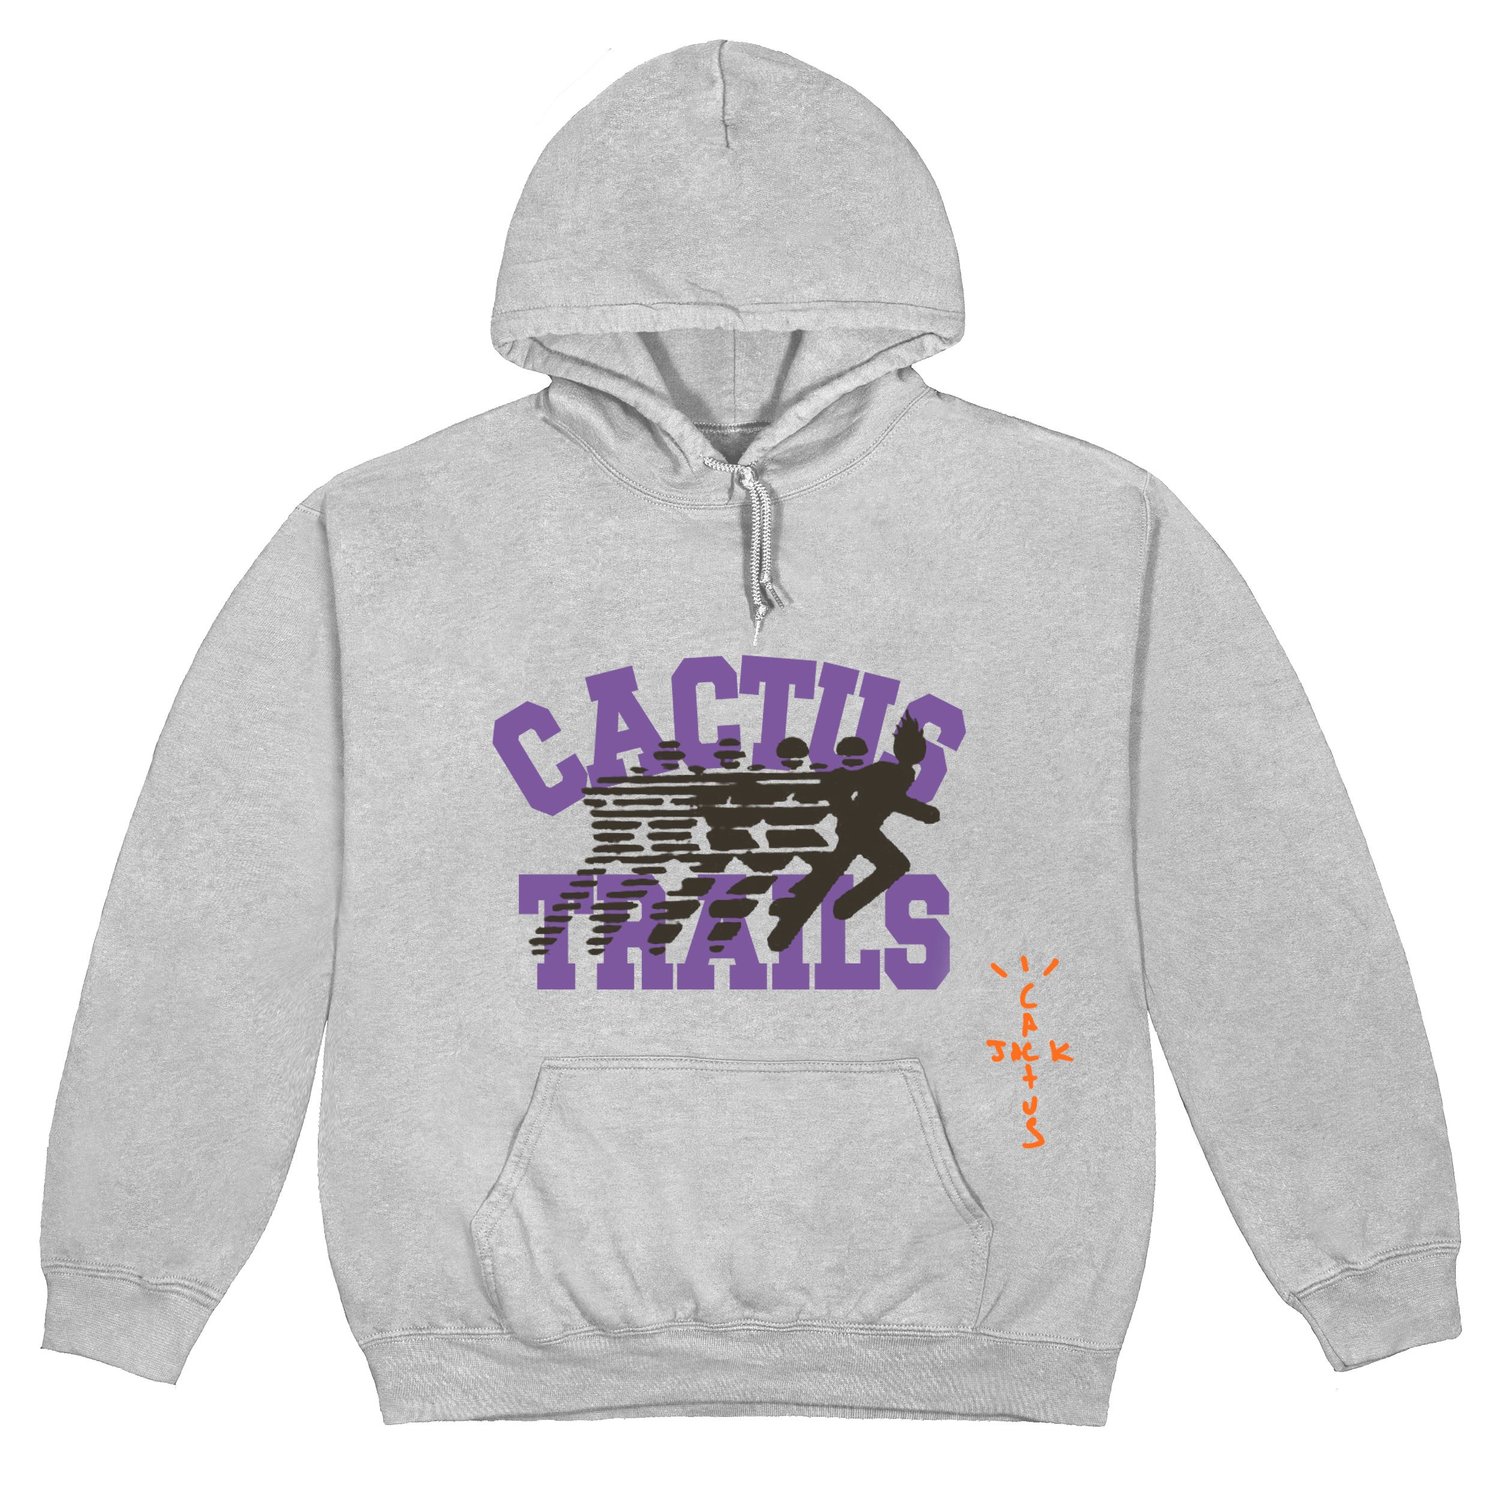 travis scott hoodie stockx